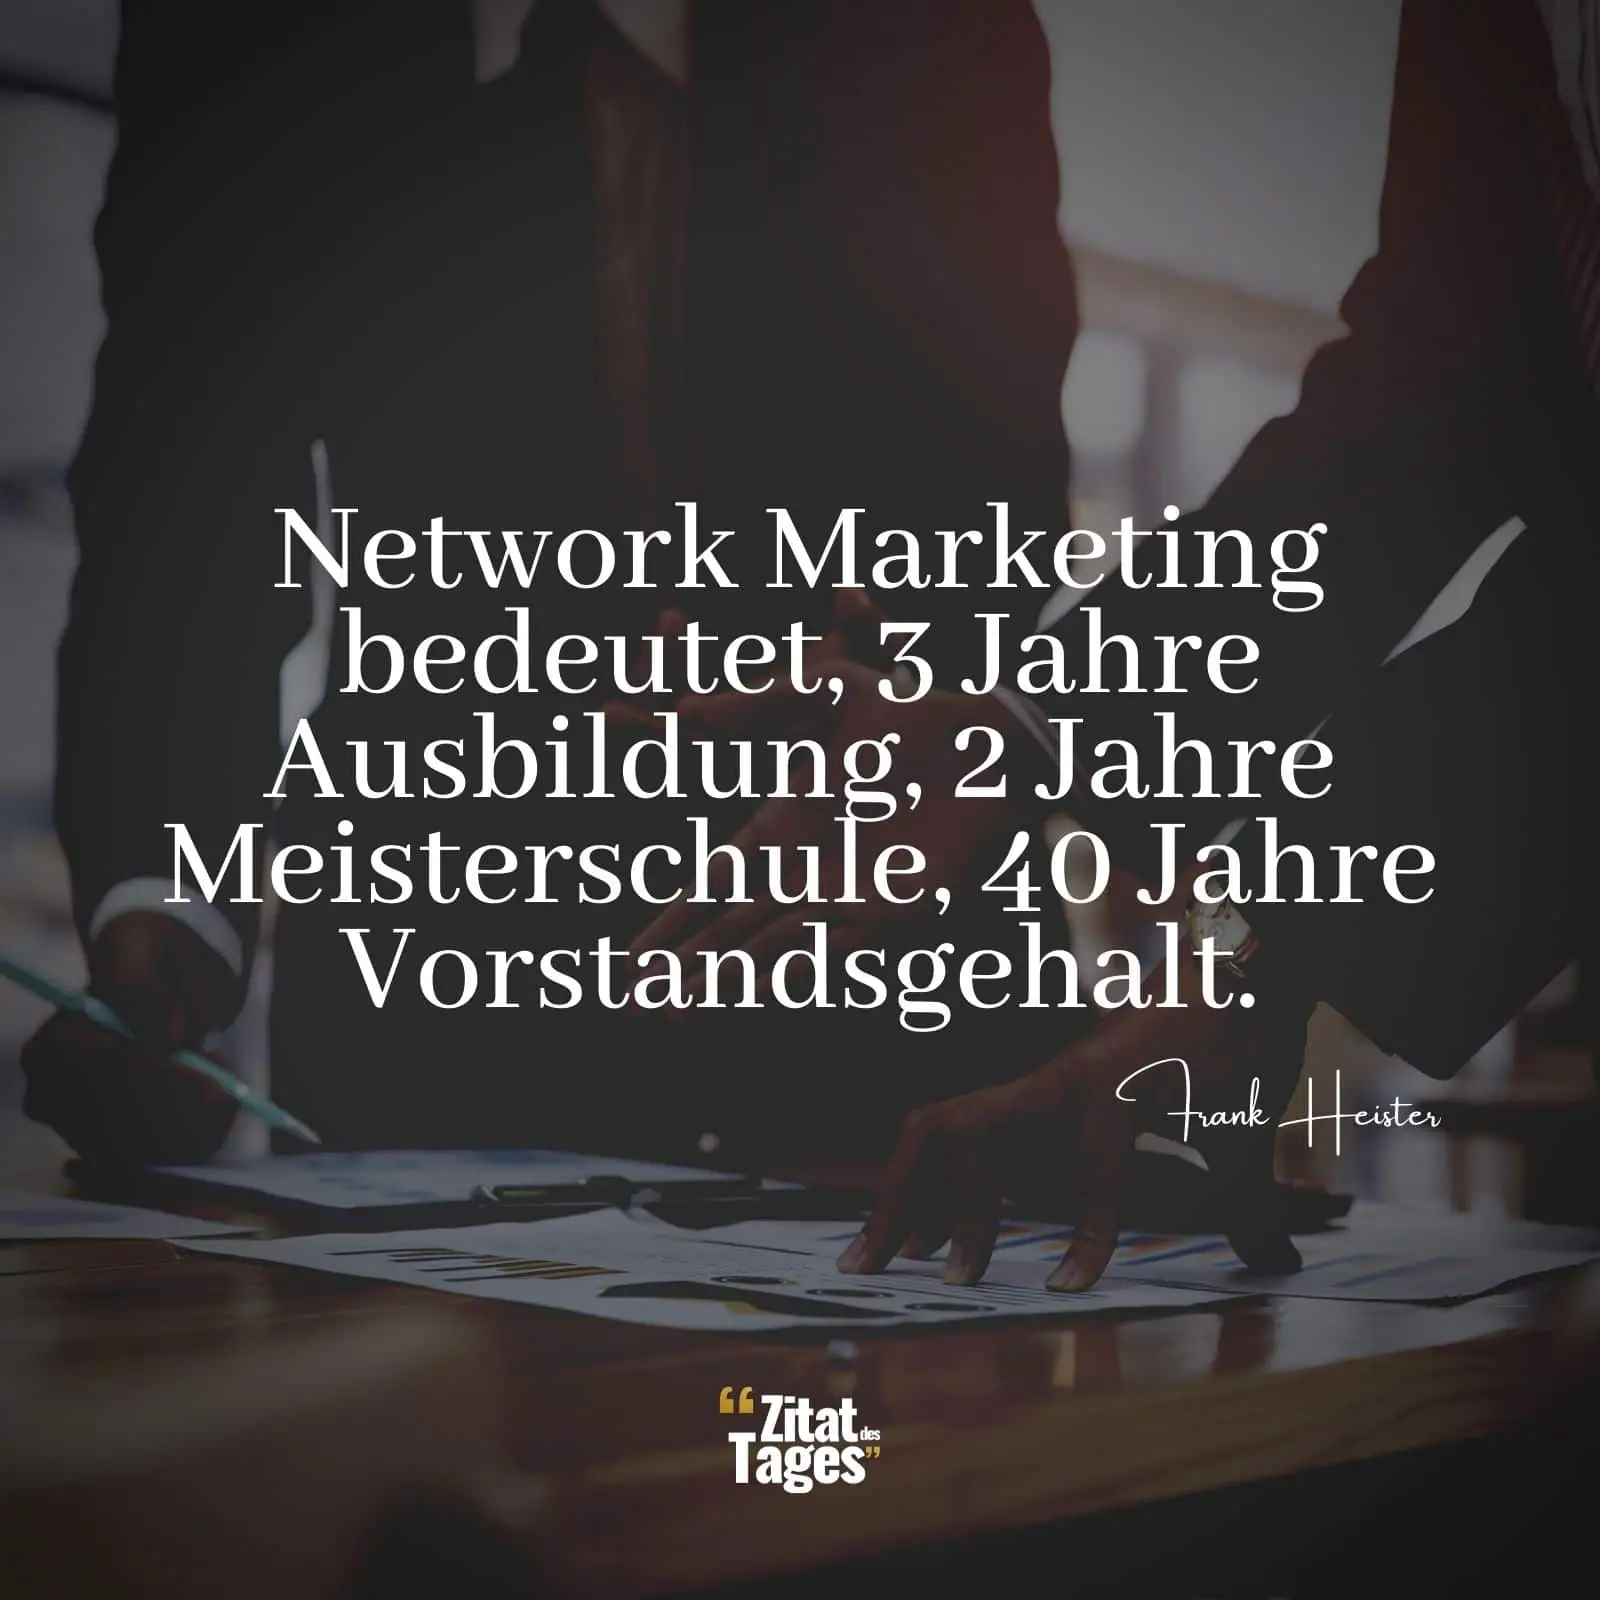 Network Marketing bedeutet, 3 Jahre Ausbildung, 2 Jahre Meisterschule, 40 Jahre Vorstandsgehalt. - Frank Heister